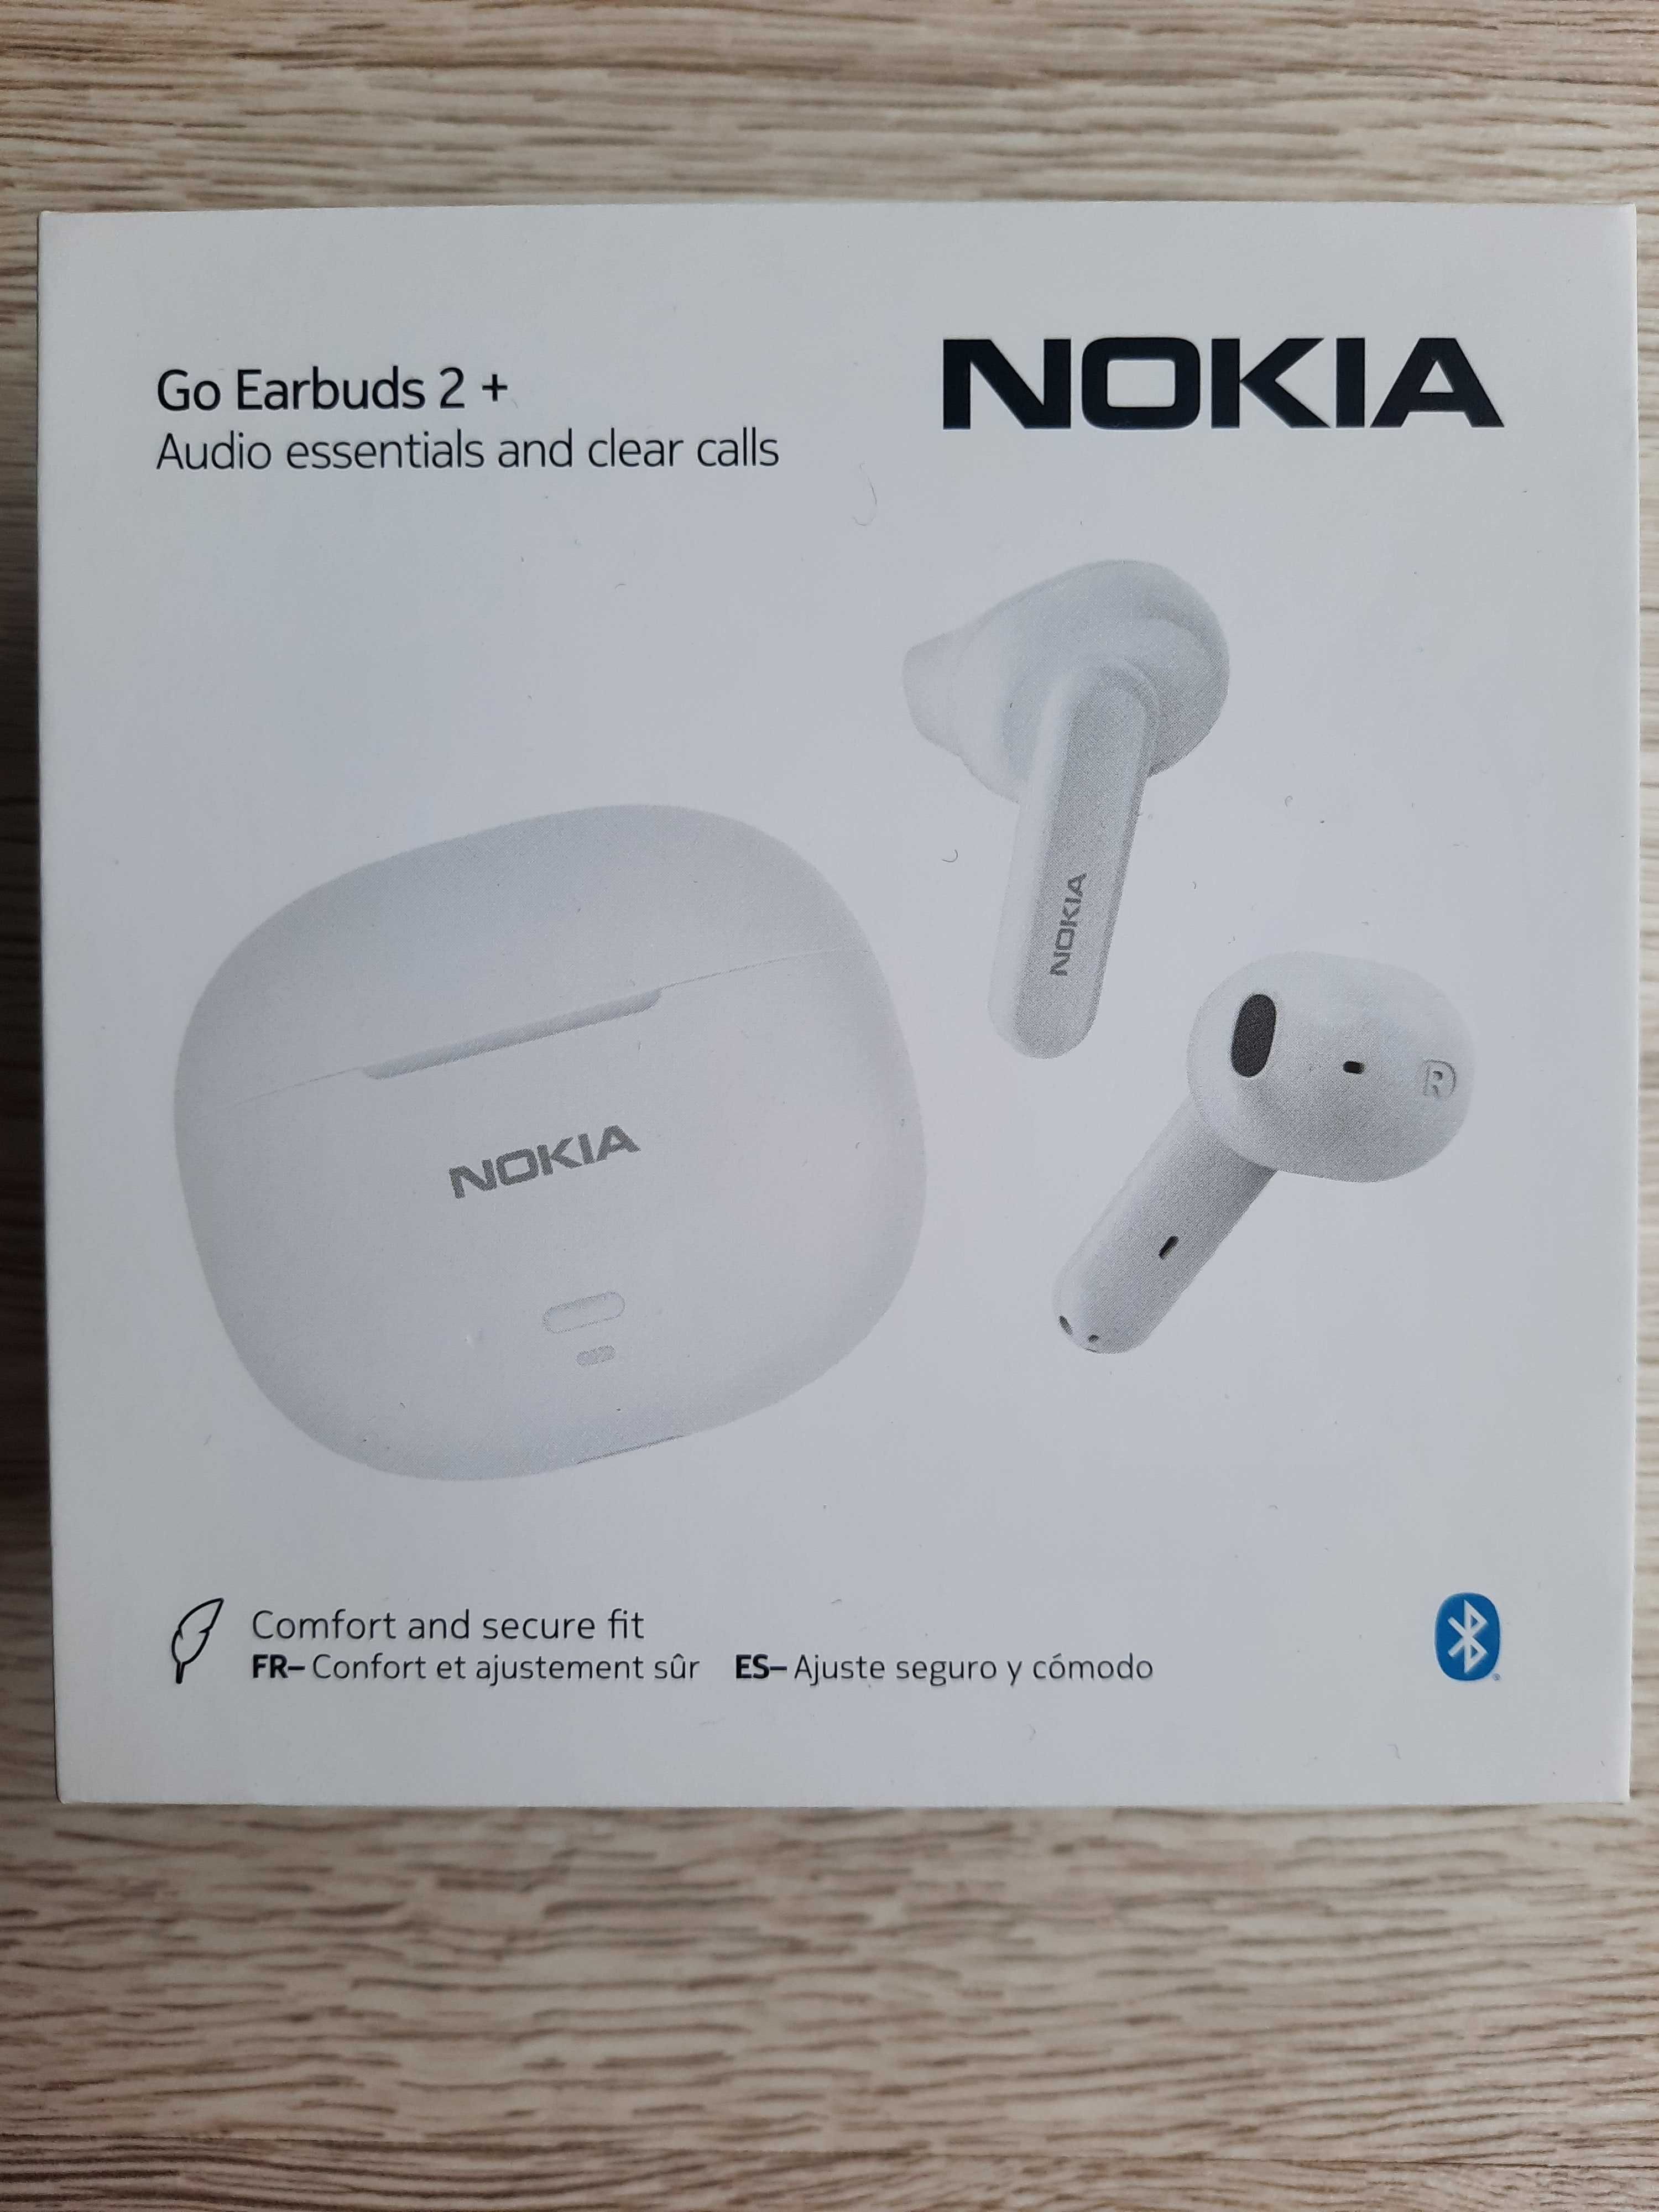 NOWE słuchawki bezprzewodowe douszne Nokia Go Earbuds 2+